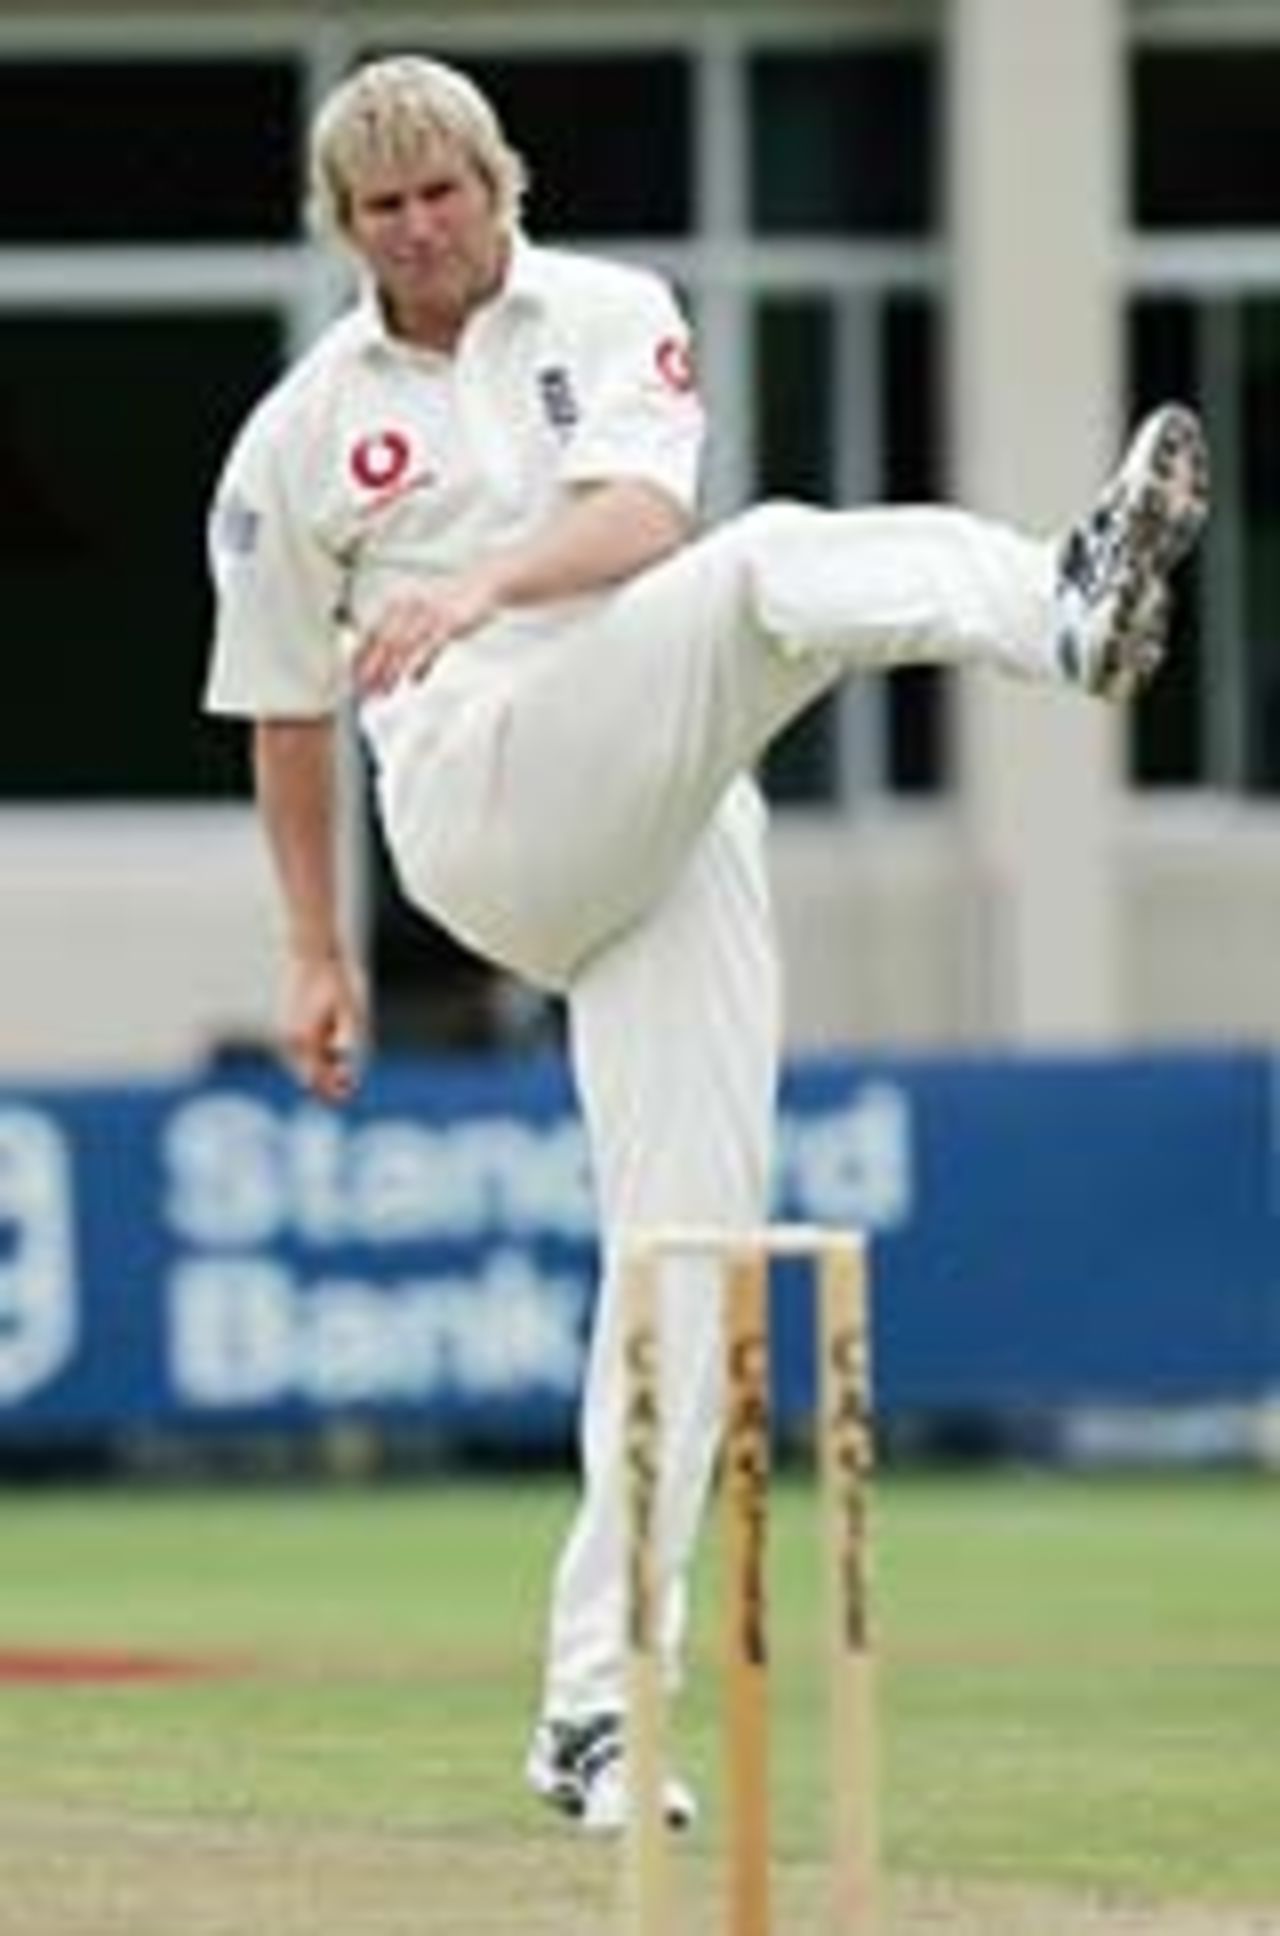 Frustration for Matthew Hoggard, South Africa v England, 1st Test, Port Elizabeth, December 20, 2004